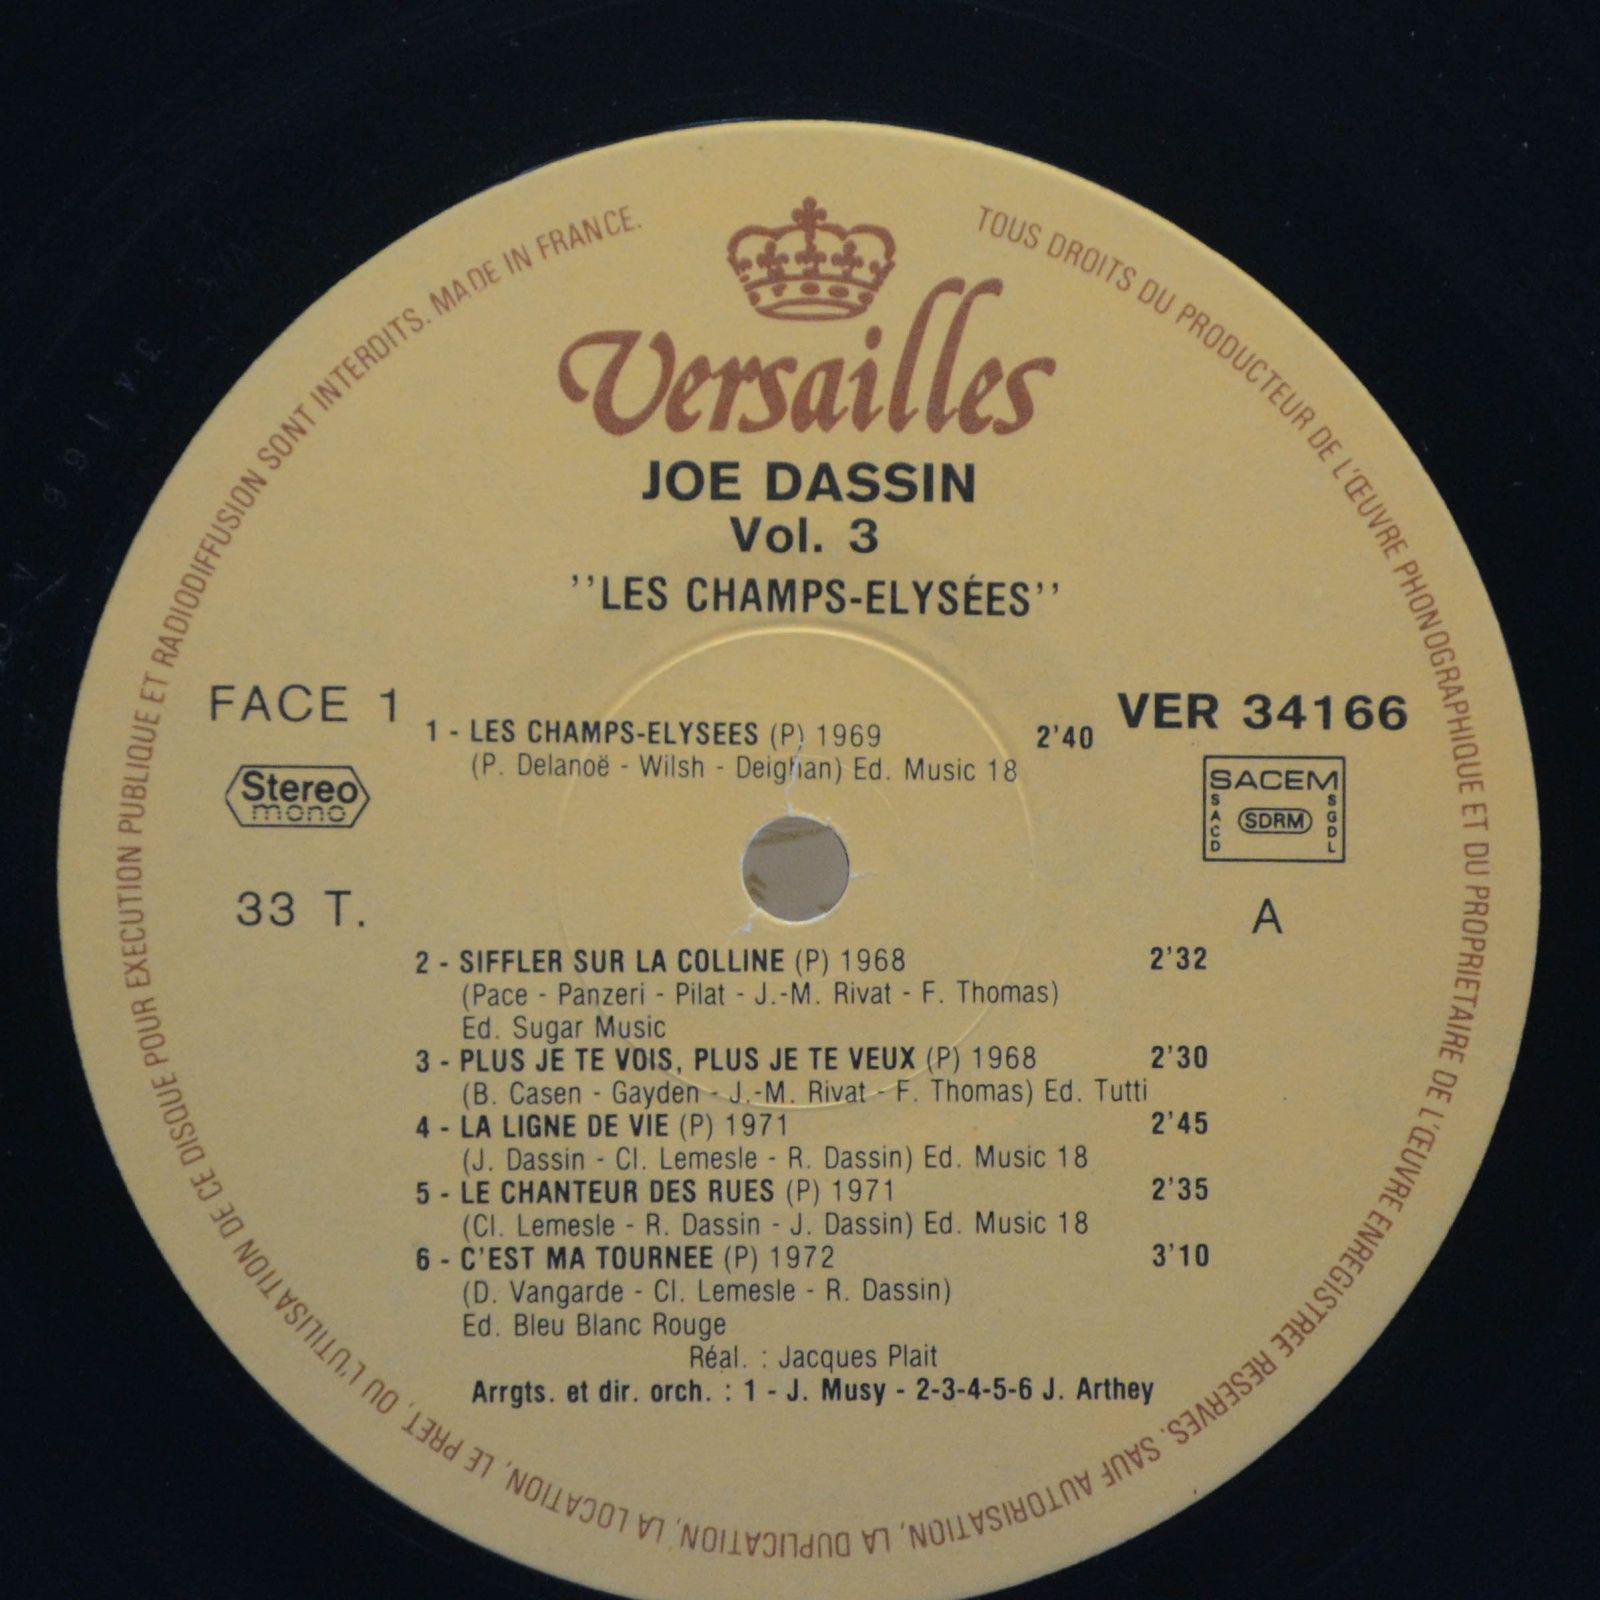 Joe Dassin — Vol. 3 Les Champs-Elysées (France), 1978